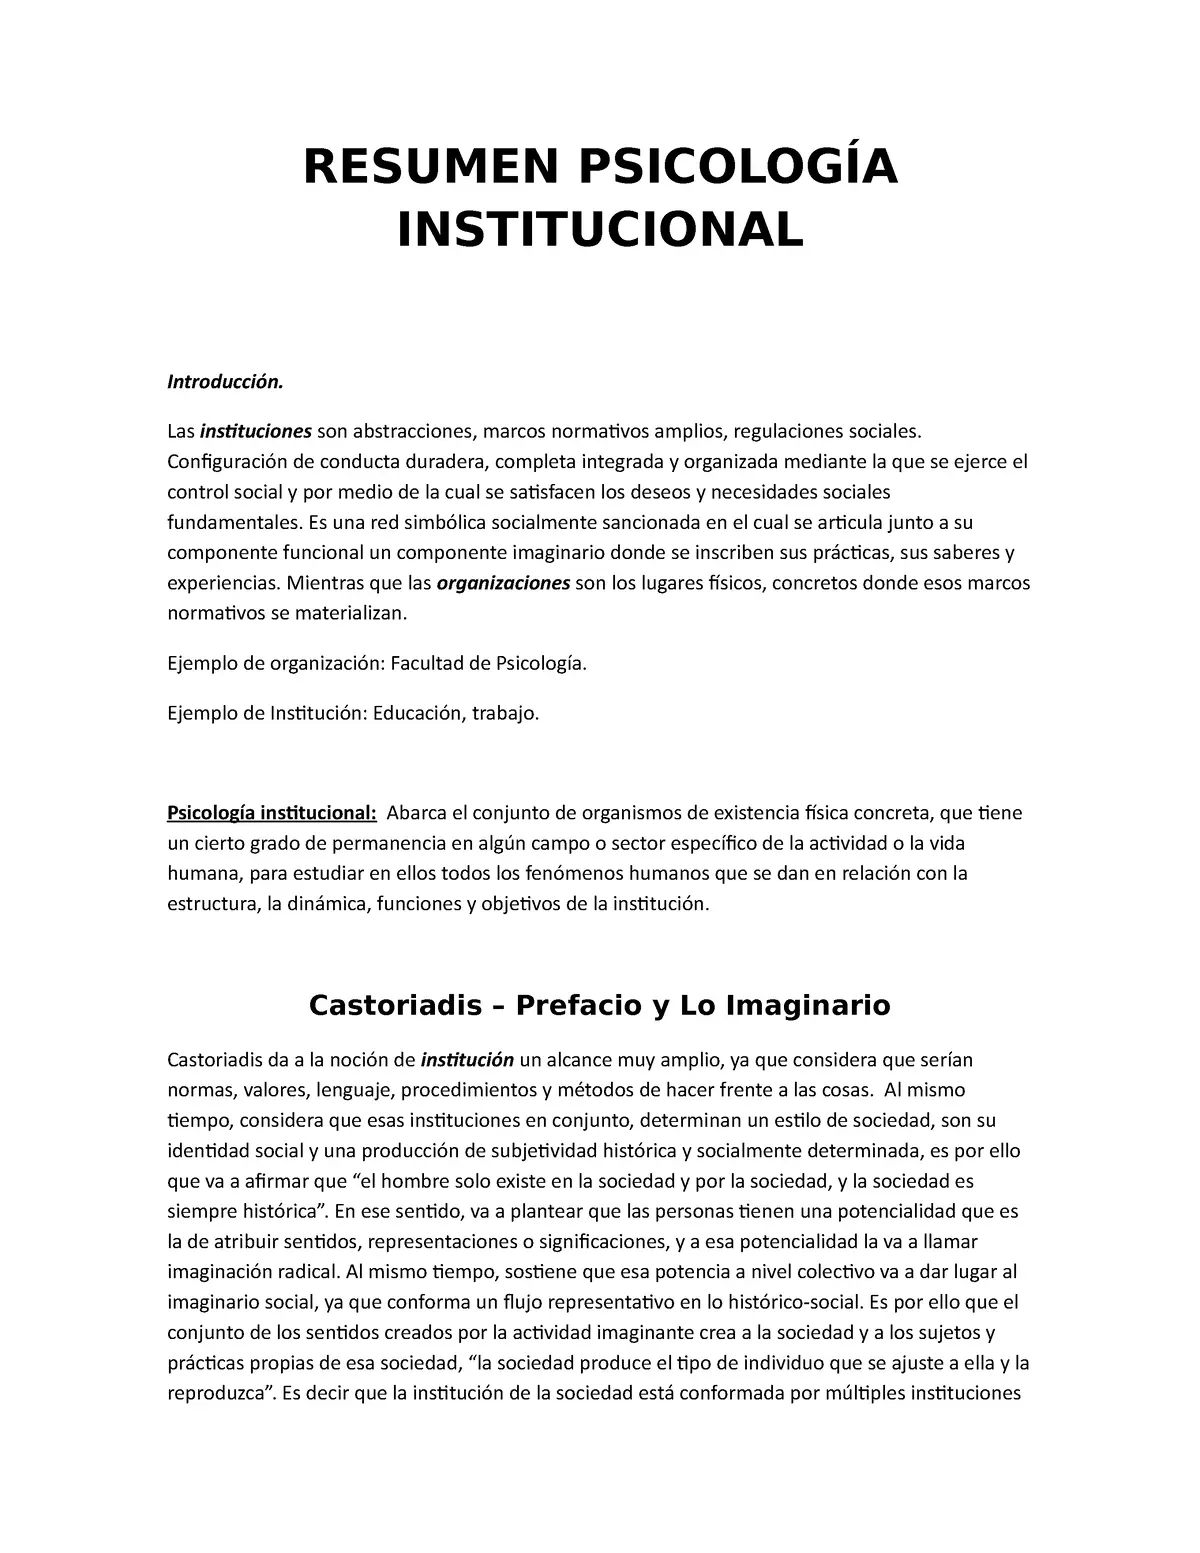 psicologia institucional resumen - Quién creó la psicologia institucional